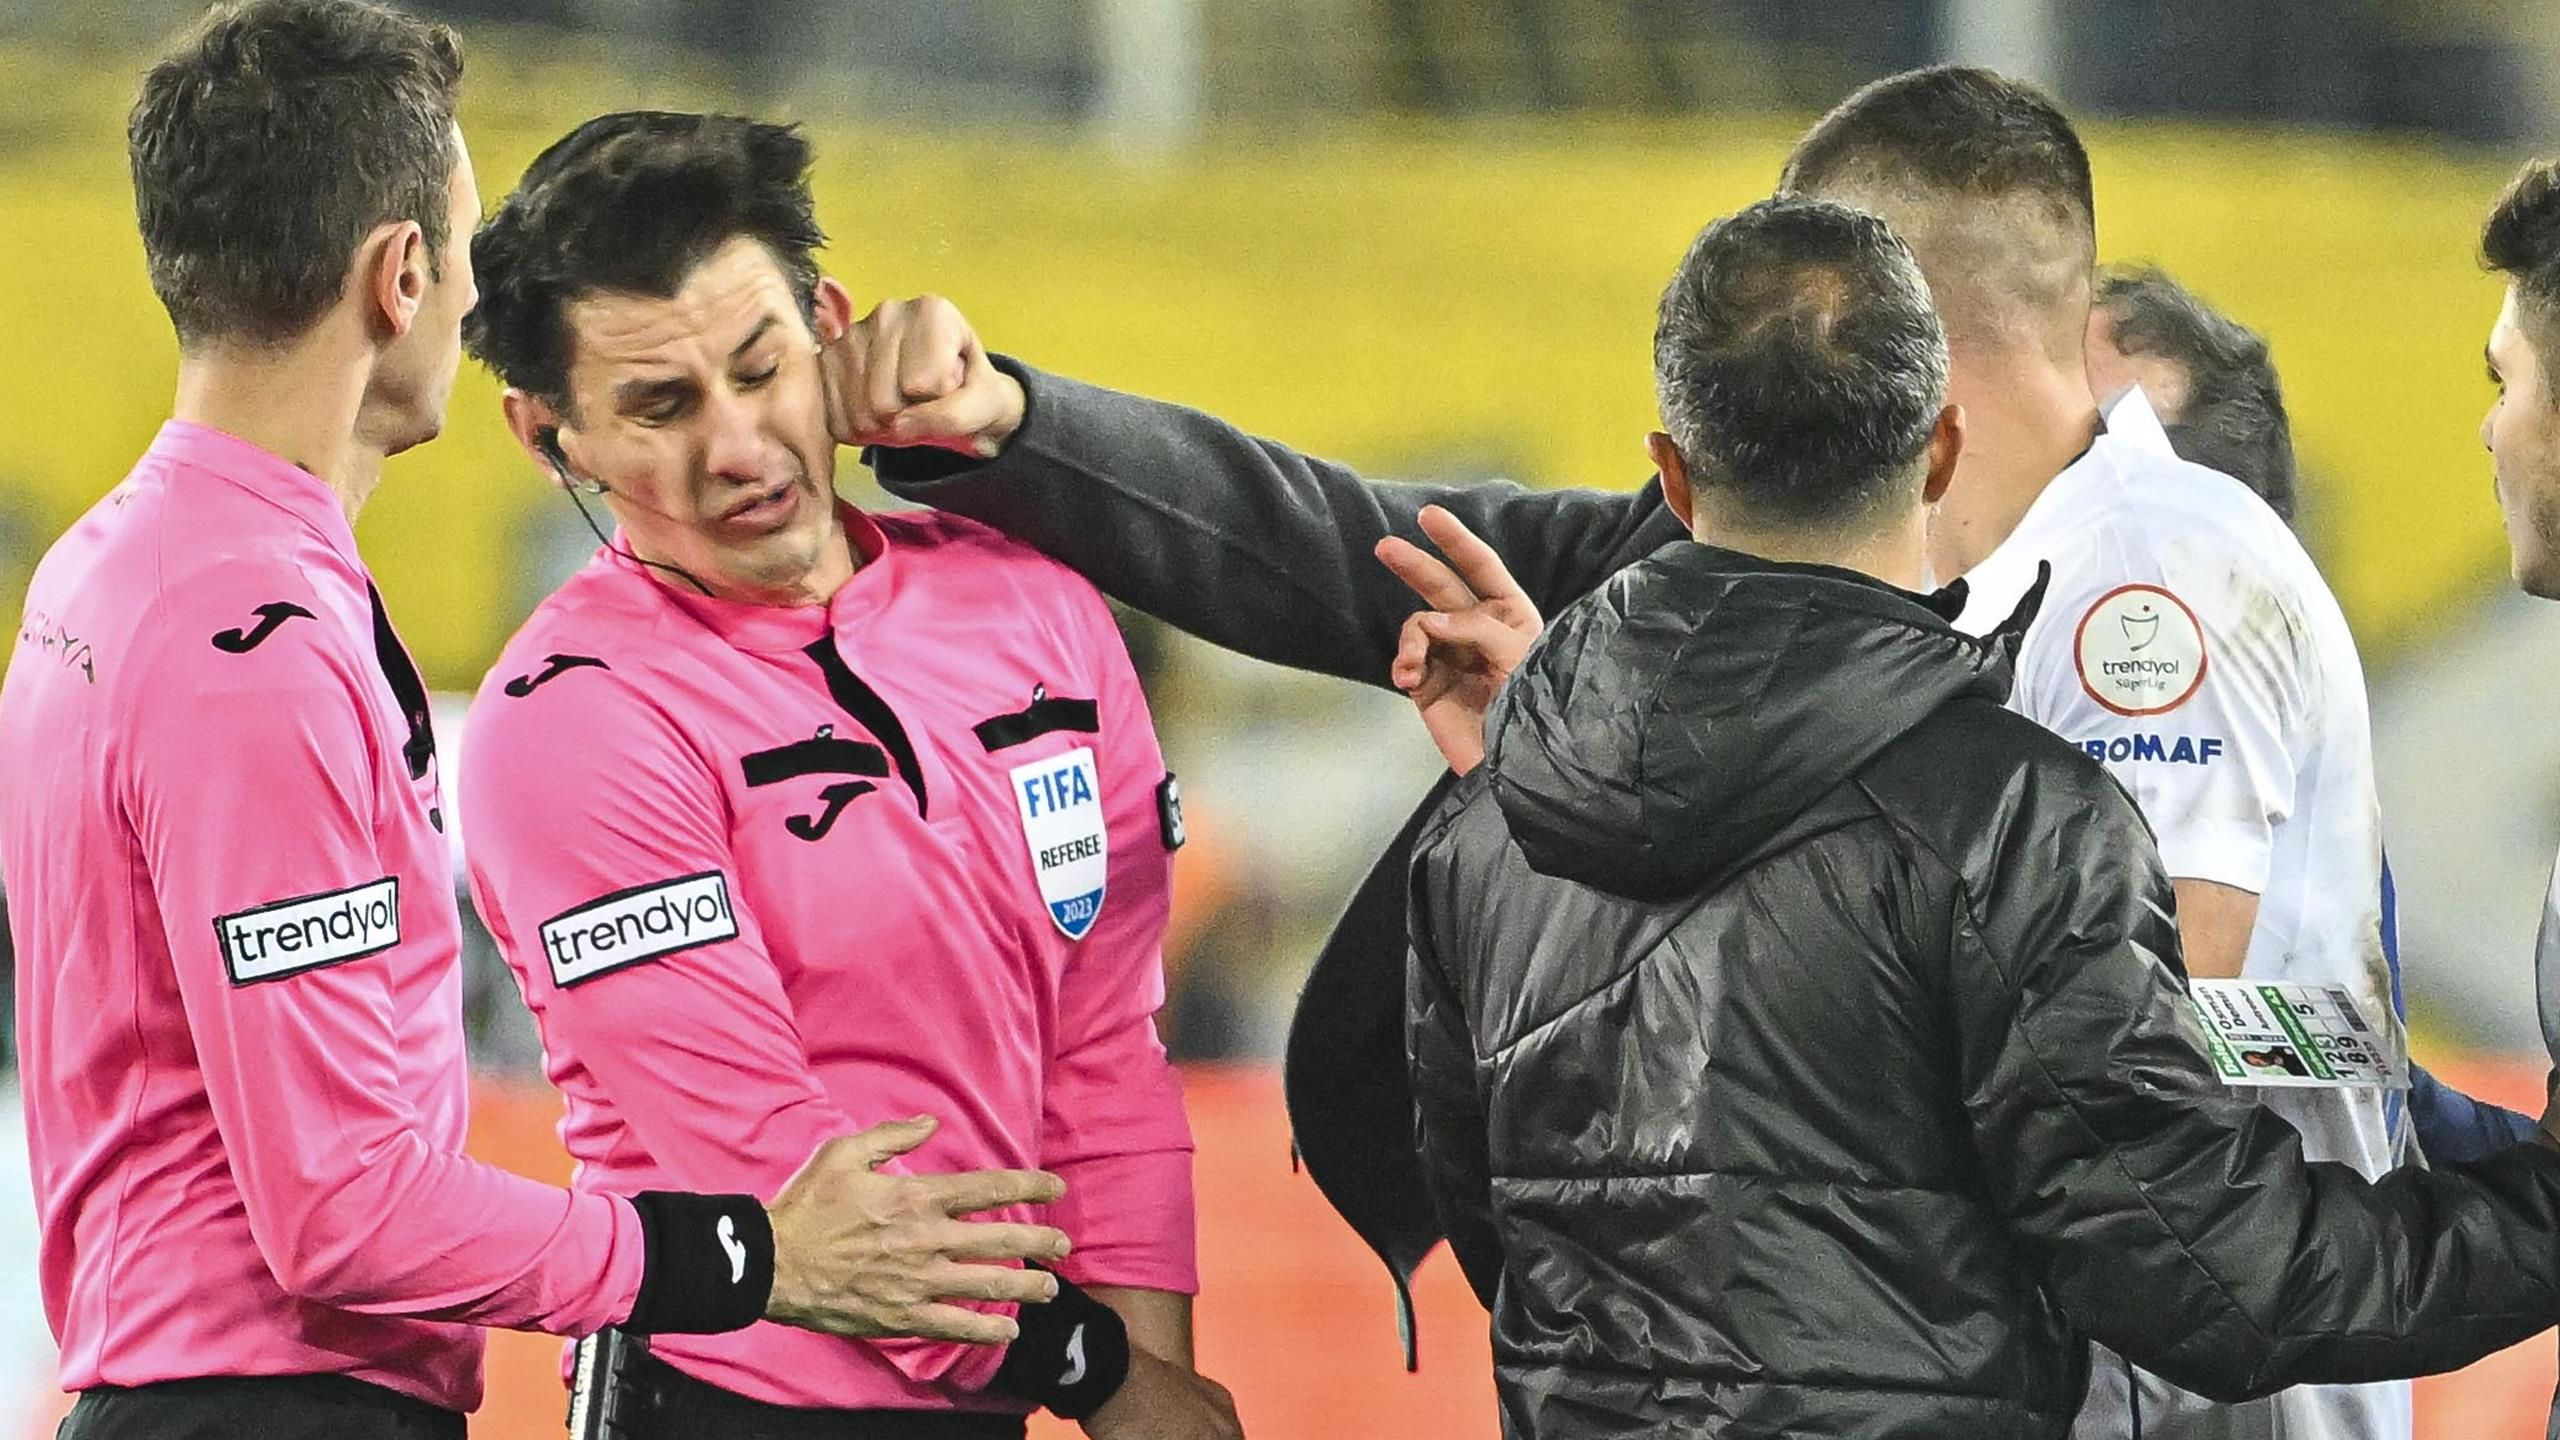 Turkish leagues suspended after referee Halil Umut Meler punched